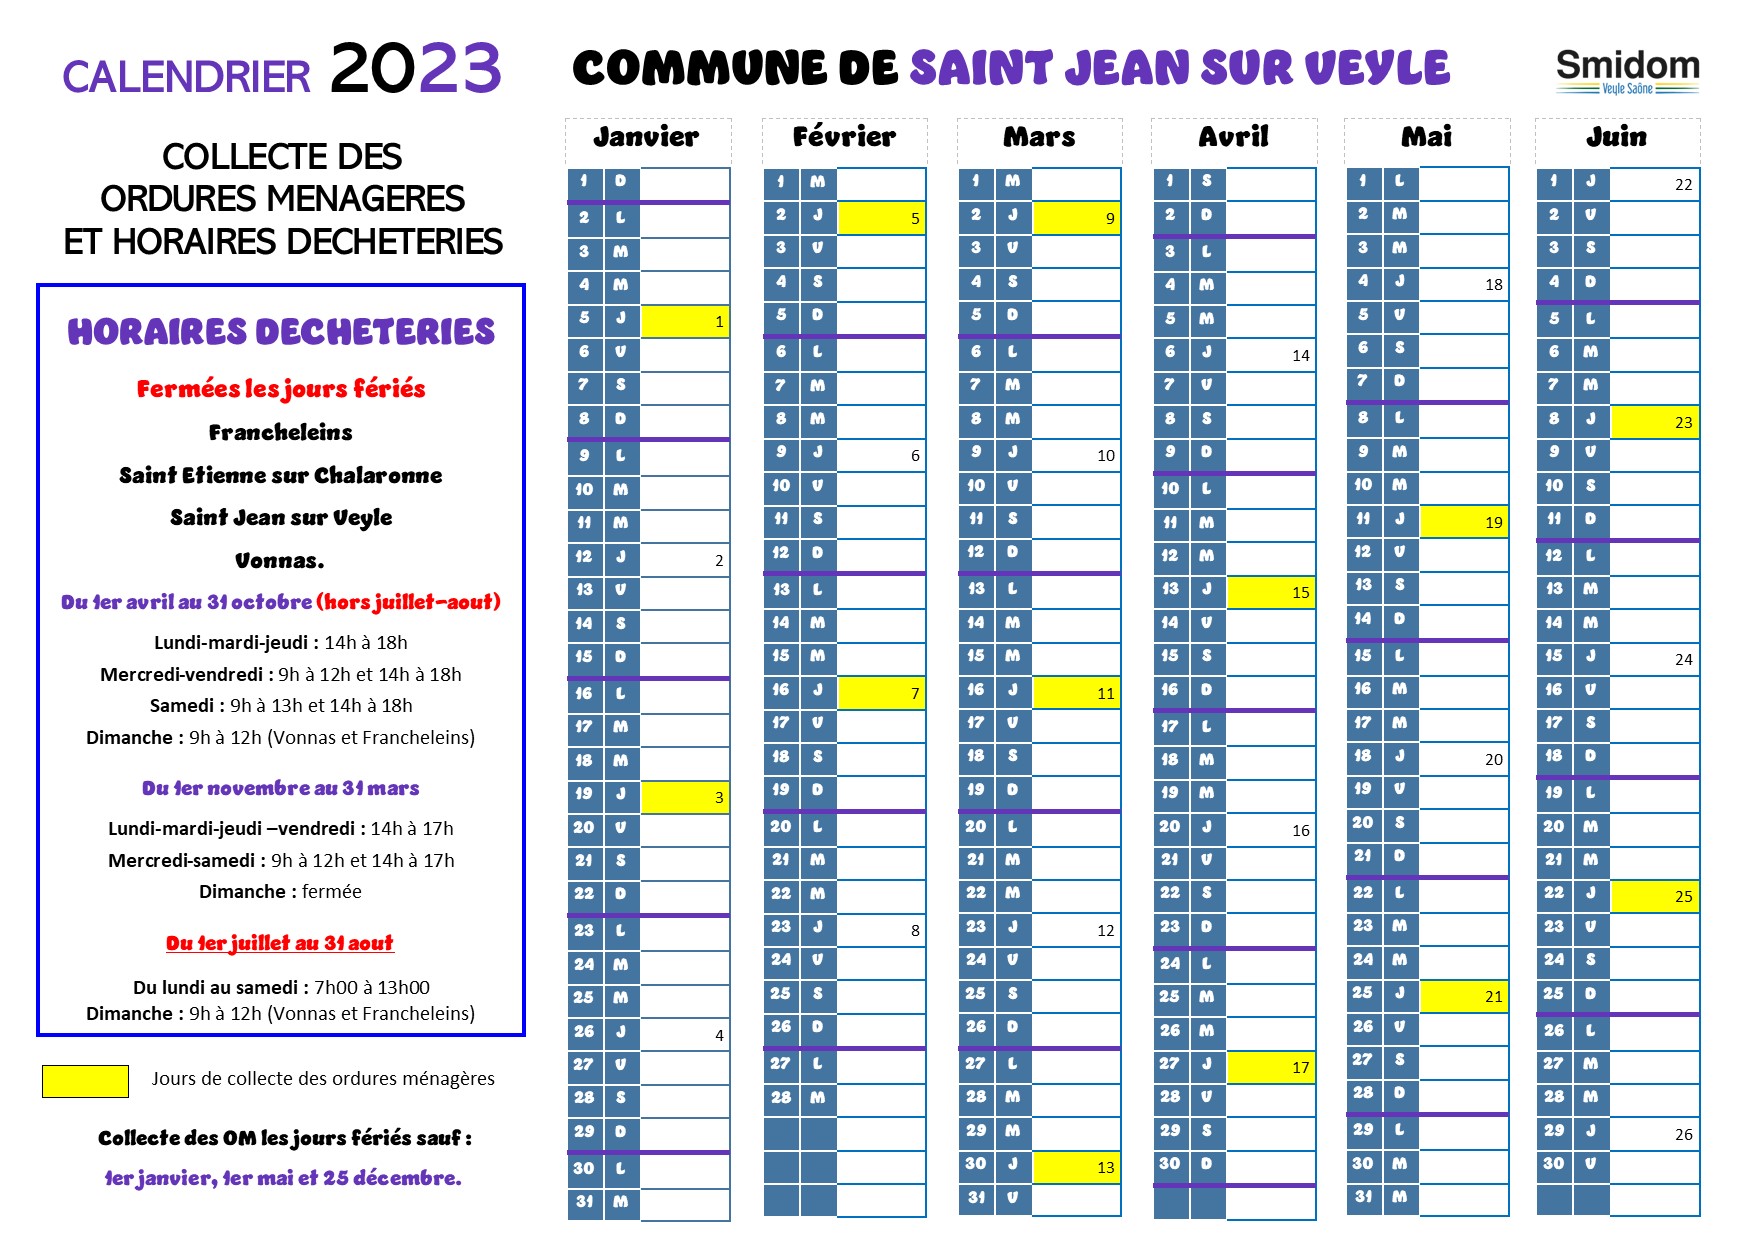 Saint Jean sur Veyle Calendrier 2023.jpg